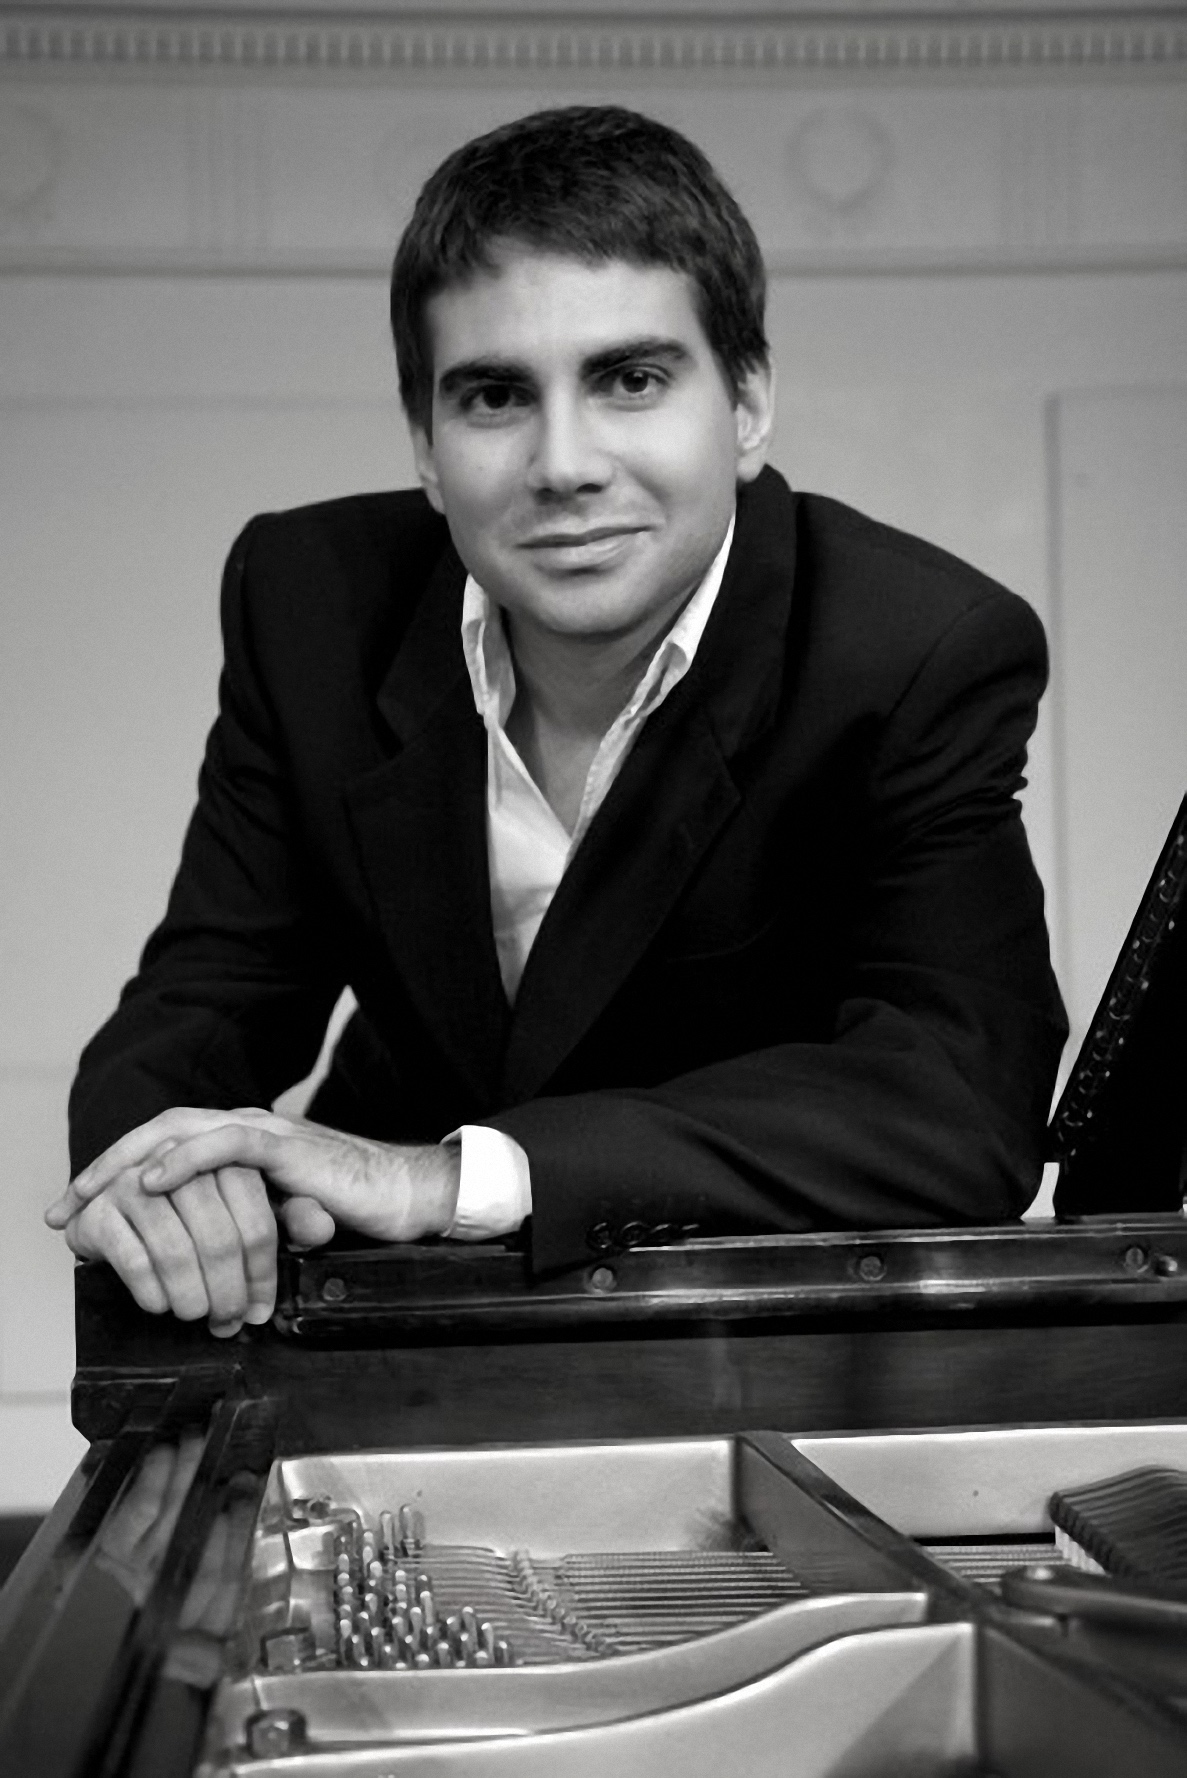 El pianista cartagenero Gabriel Escudero protagonizará el próximo concierto en el Auditorio regional Víctor Villegas de Murcia